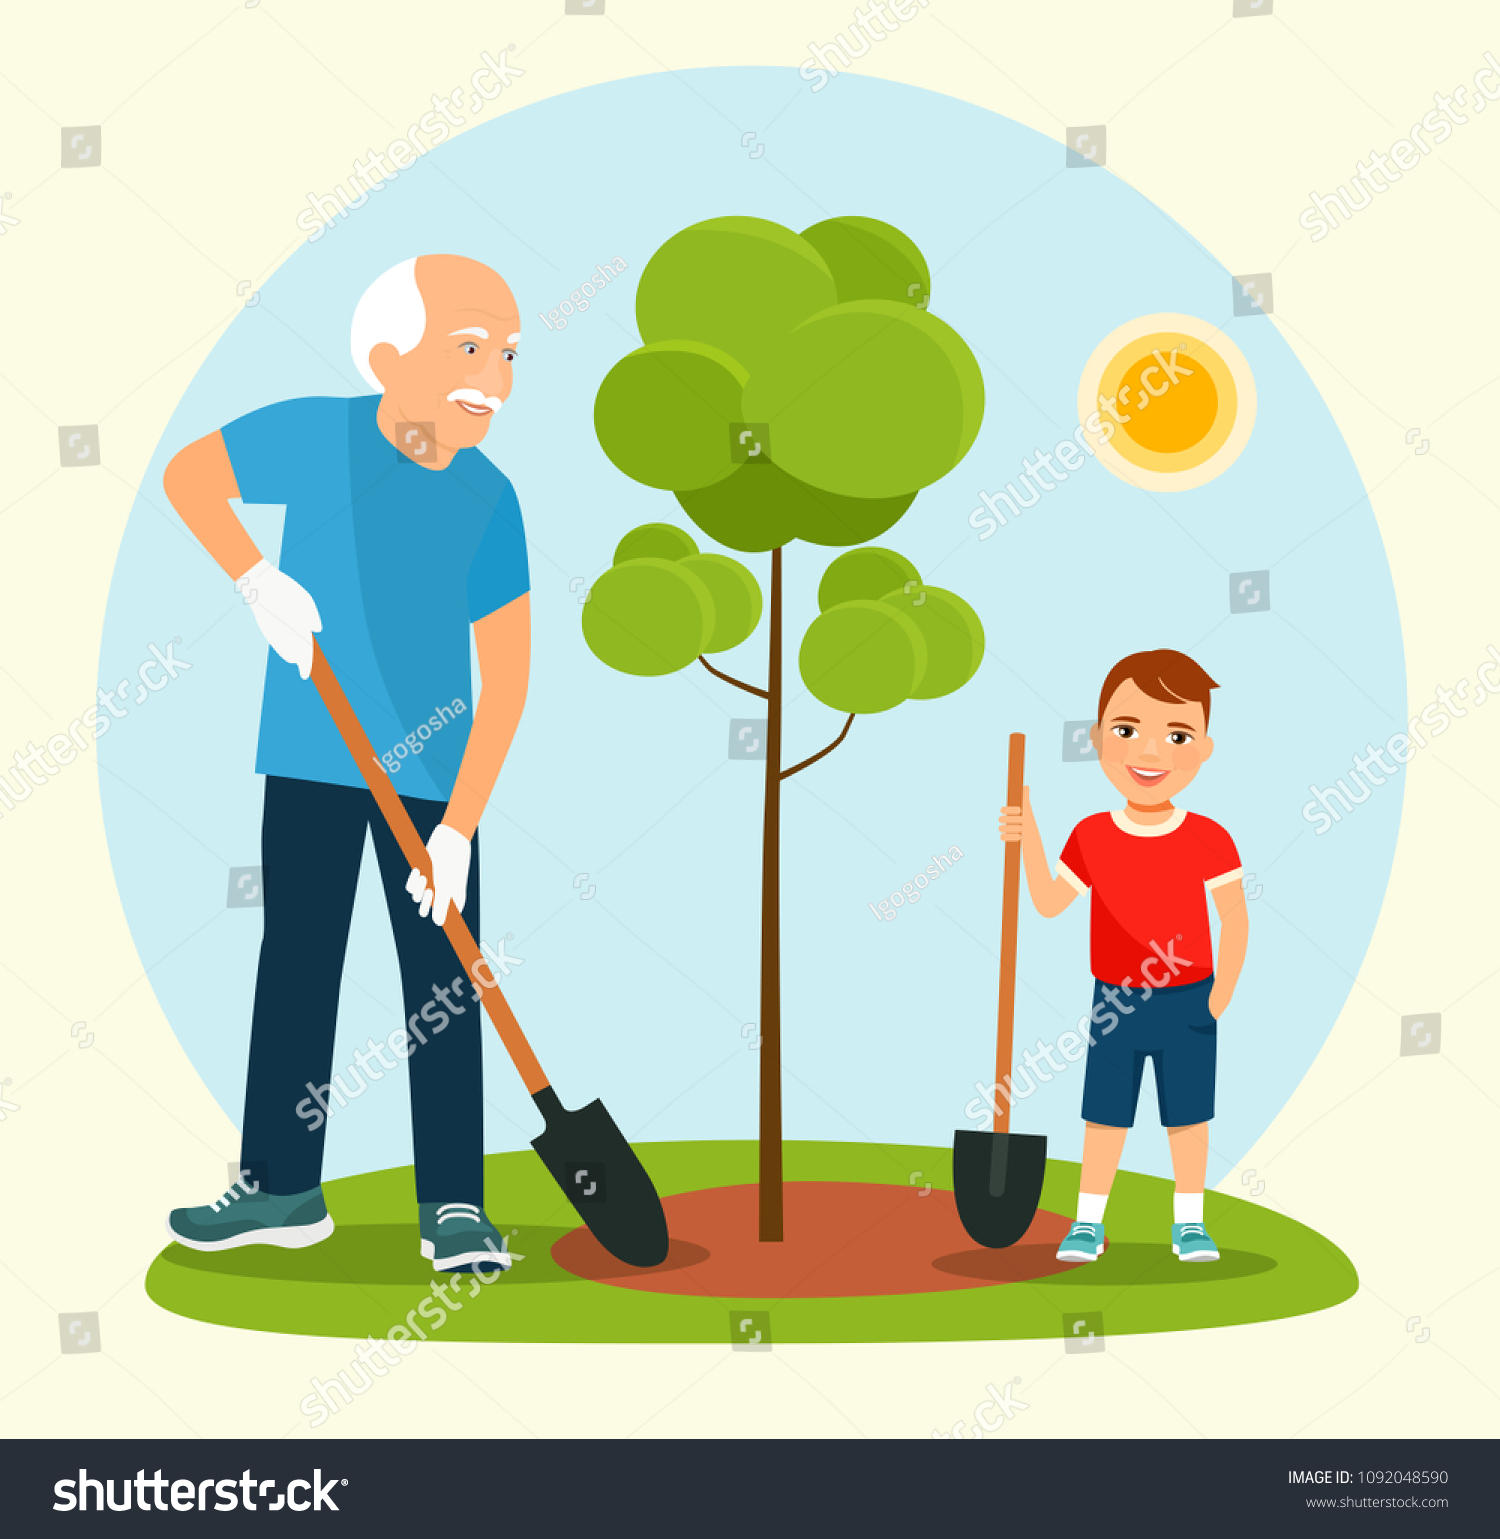 Дедушка посадил дерево 54. Дедушка сажает дерево. Внук и дедушка сажают дерево. Мальчик сажает дерево. Дети сажают деревья с дедушкой.